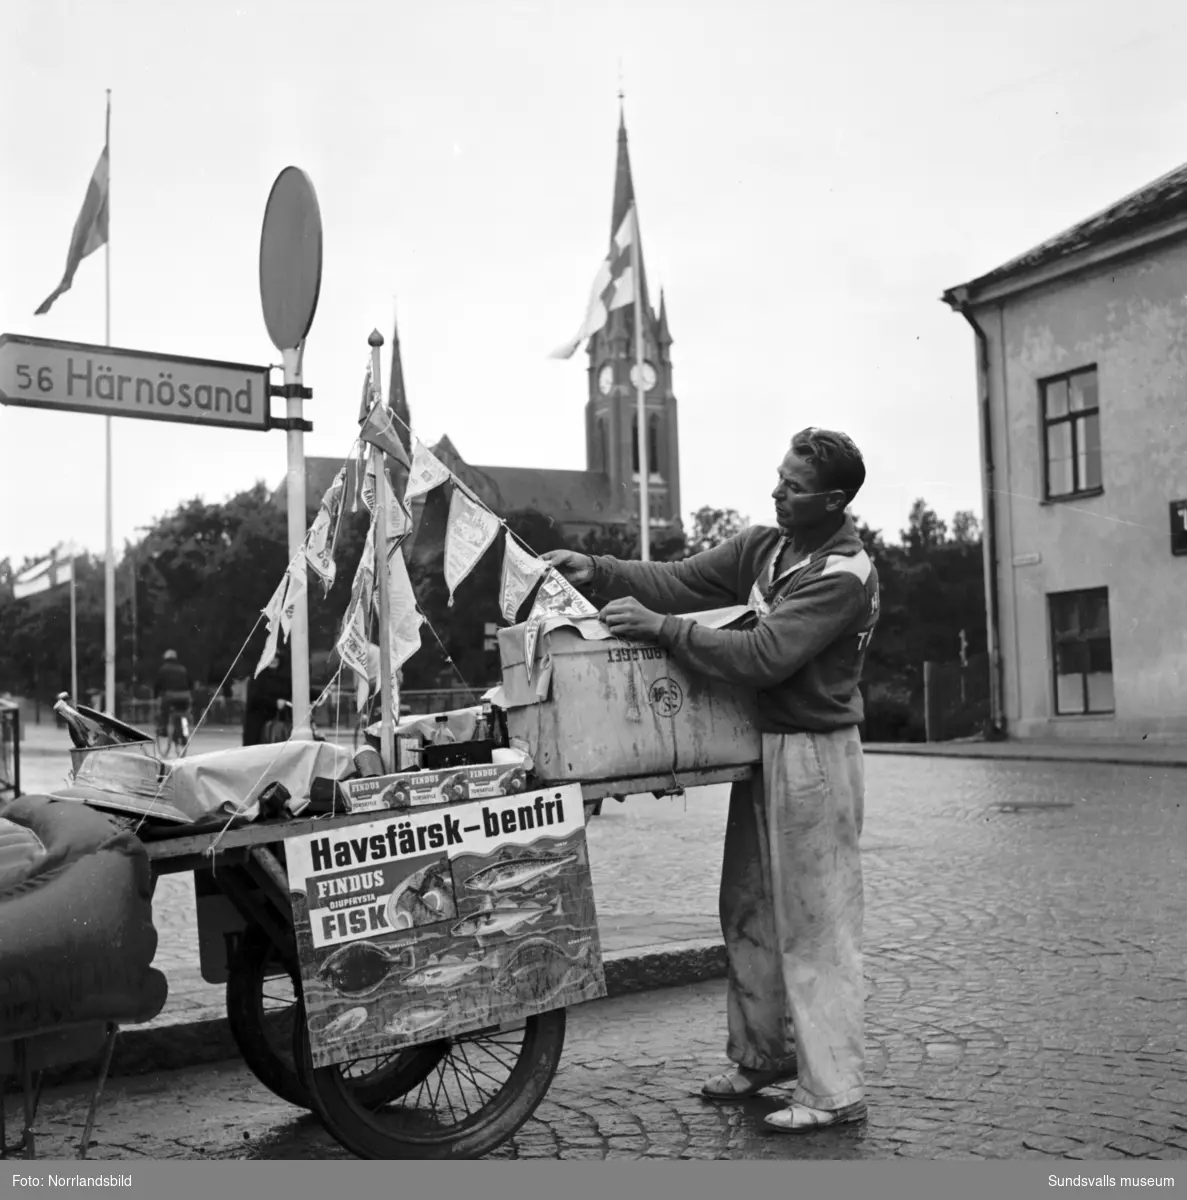 Sommaren 1954 passerade ett udda ekipage Sundsvall. Det var Enock Strandell, levnadskonstnär och lokalprofil från Trelleborg, som efter en vadslagning genomförde en vandring från Haparanda till Trelleborg med sin dragkärra packad med det nödvändigaste.